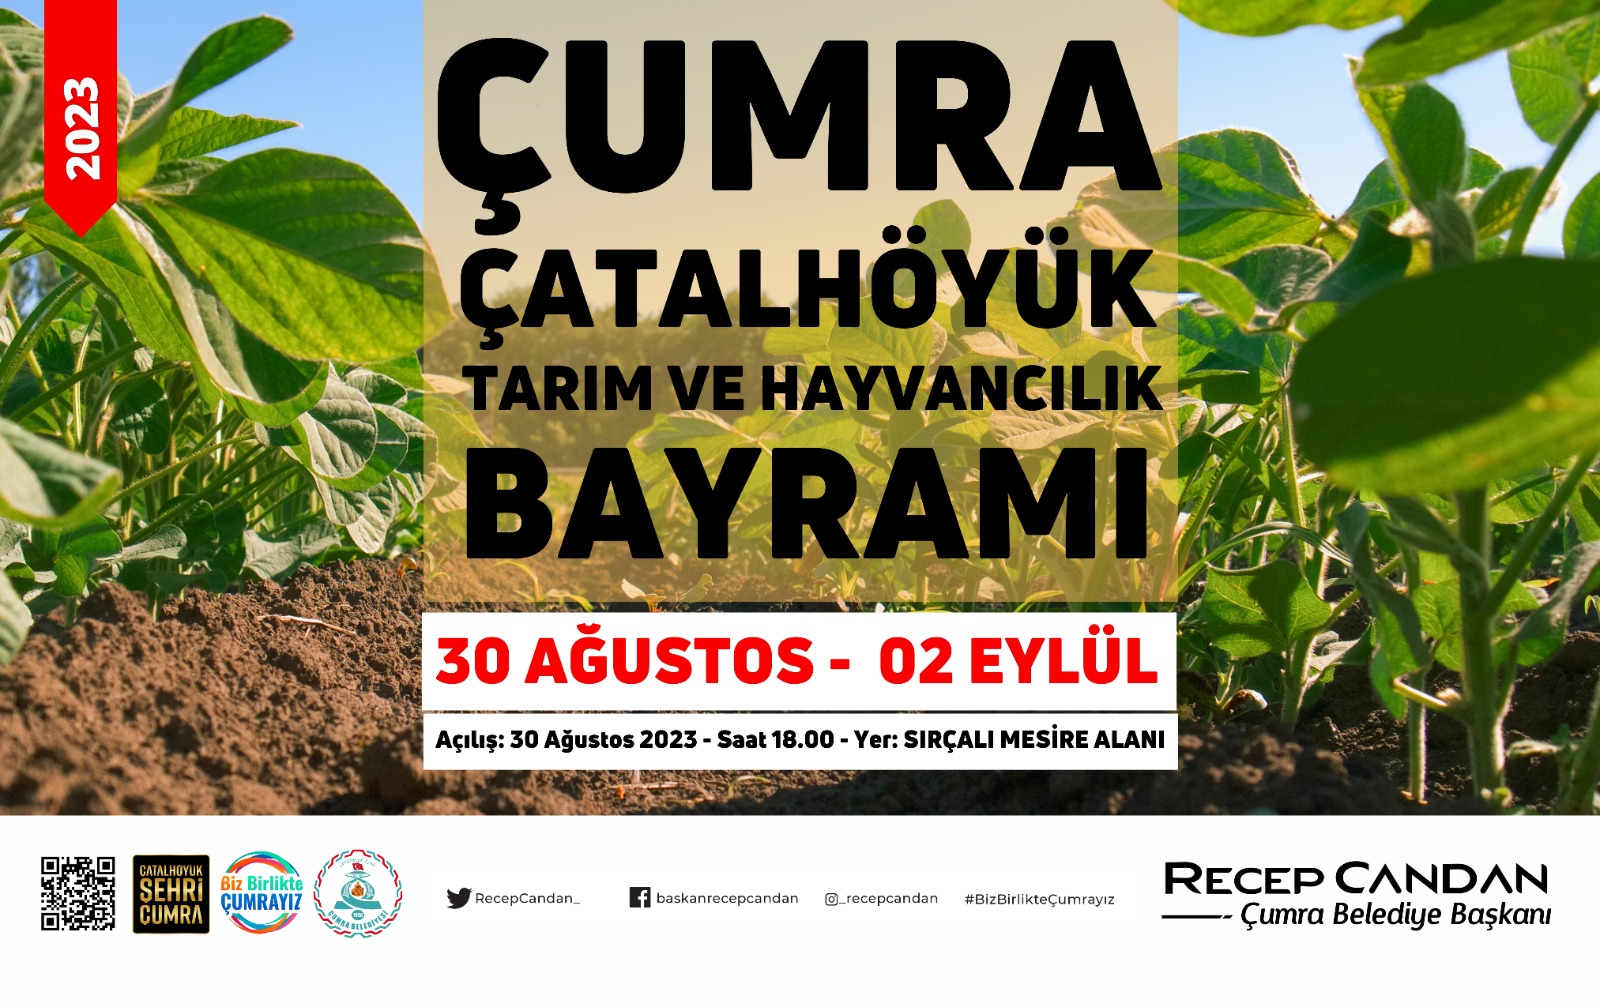 2023/08/28/cumra-catalhoyuk-tarim-ve-hayvancilik-bayrami-2023.jpeg